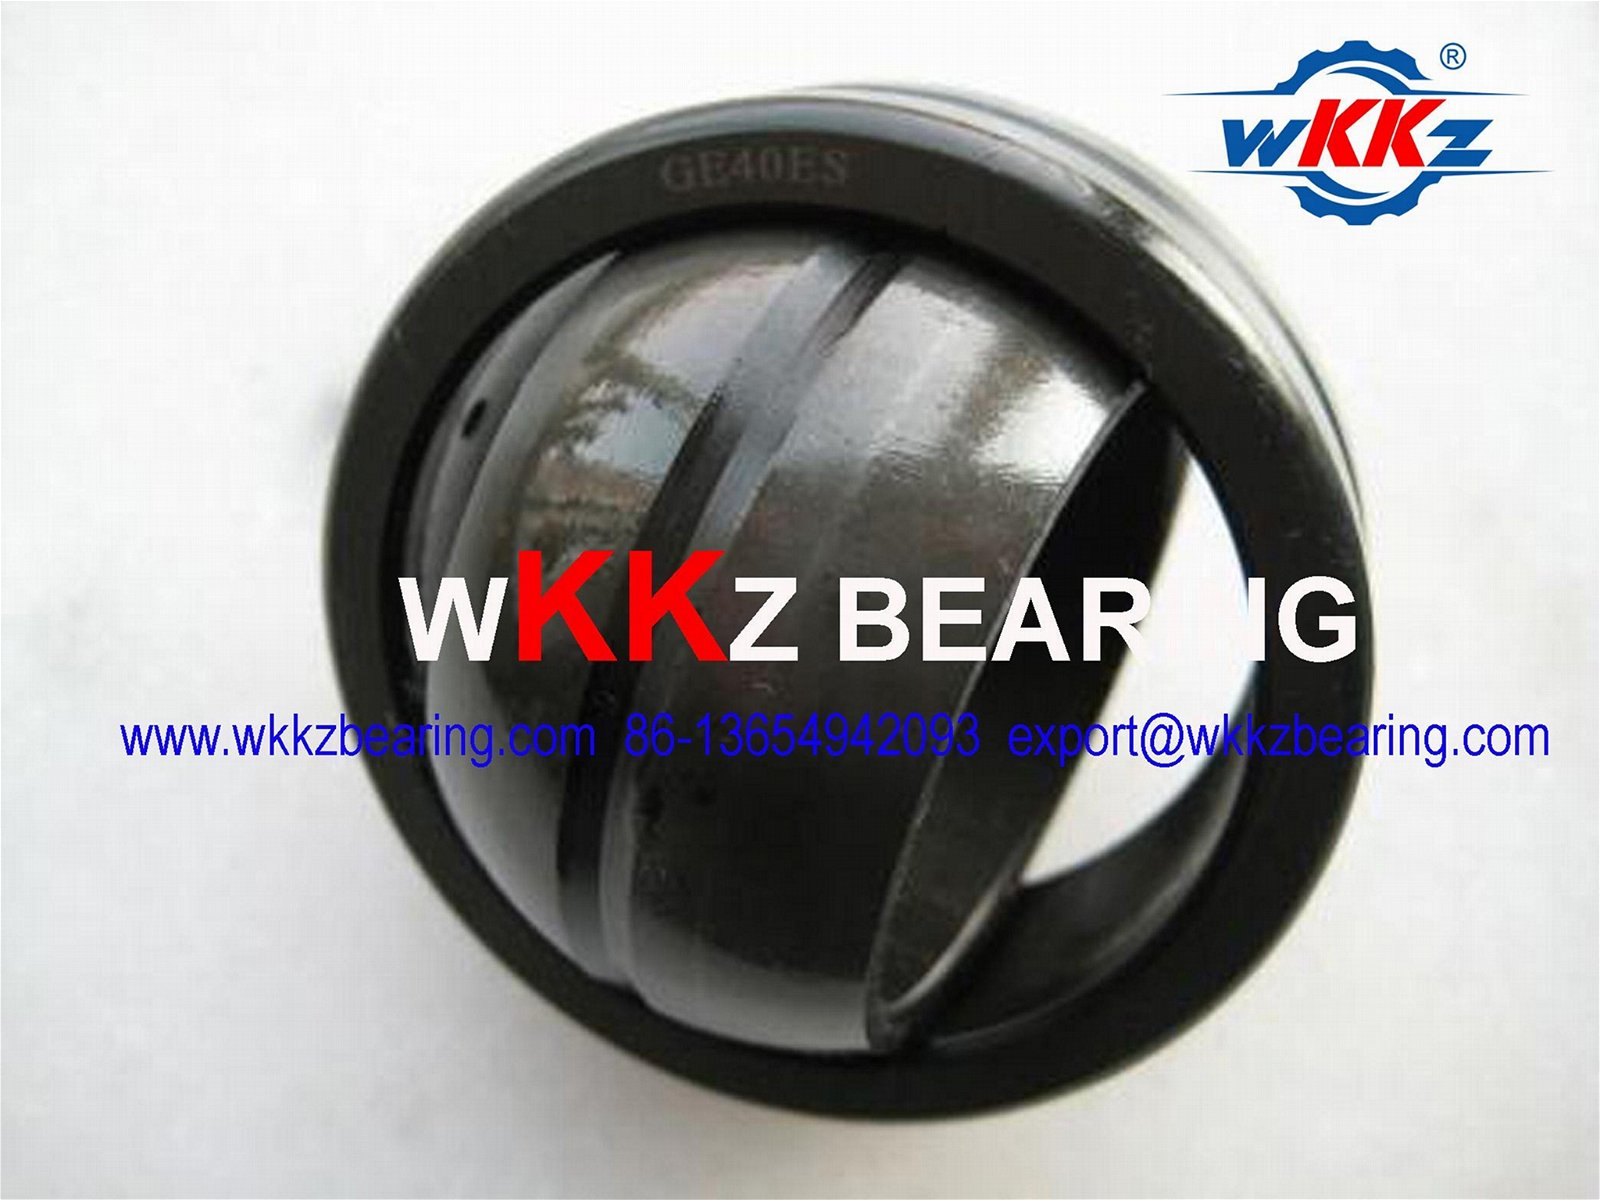 GE160ES,GE160DO spherical plain bearing,WKKZ BEARING,CHINA BEARING